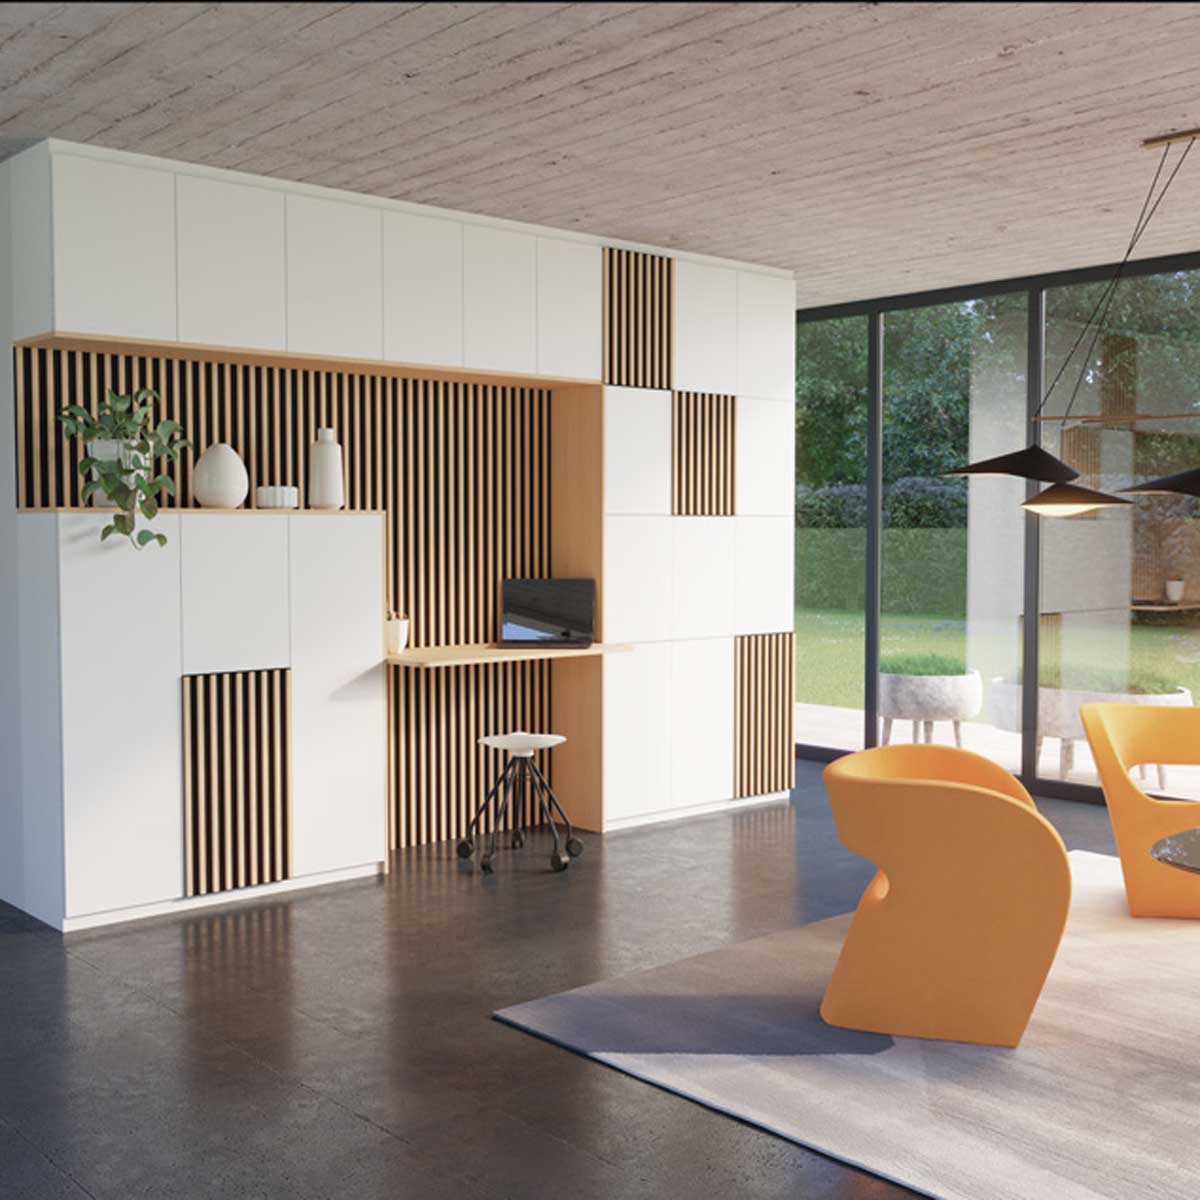 Image 3D réaliste d'un salon avec bibliothèque bureau blanche et fauteuils oranges.